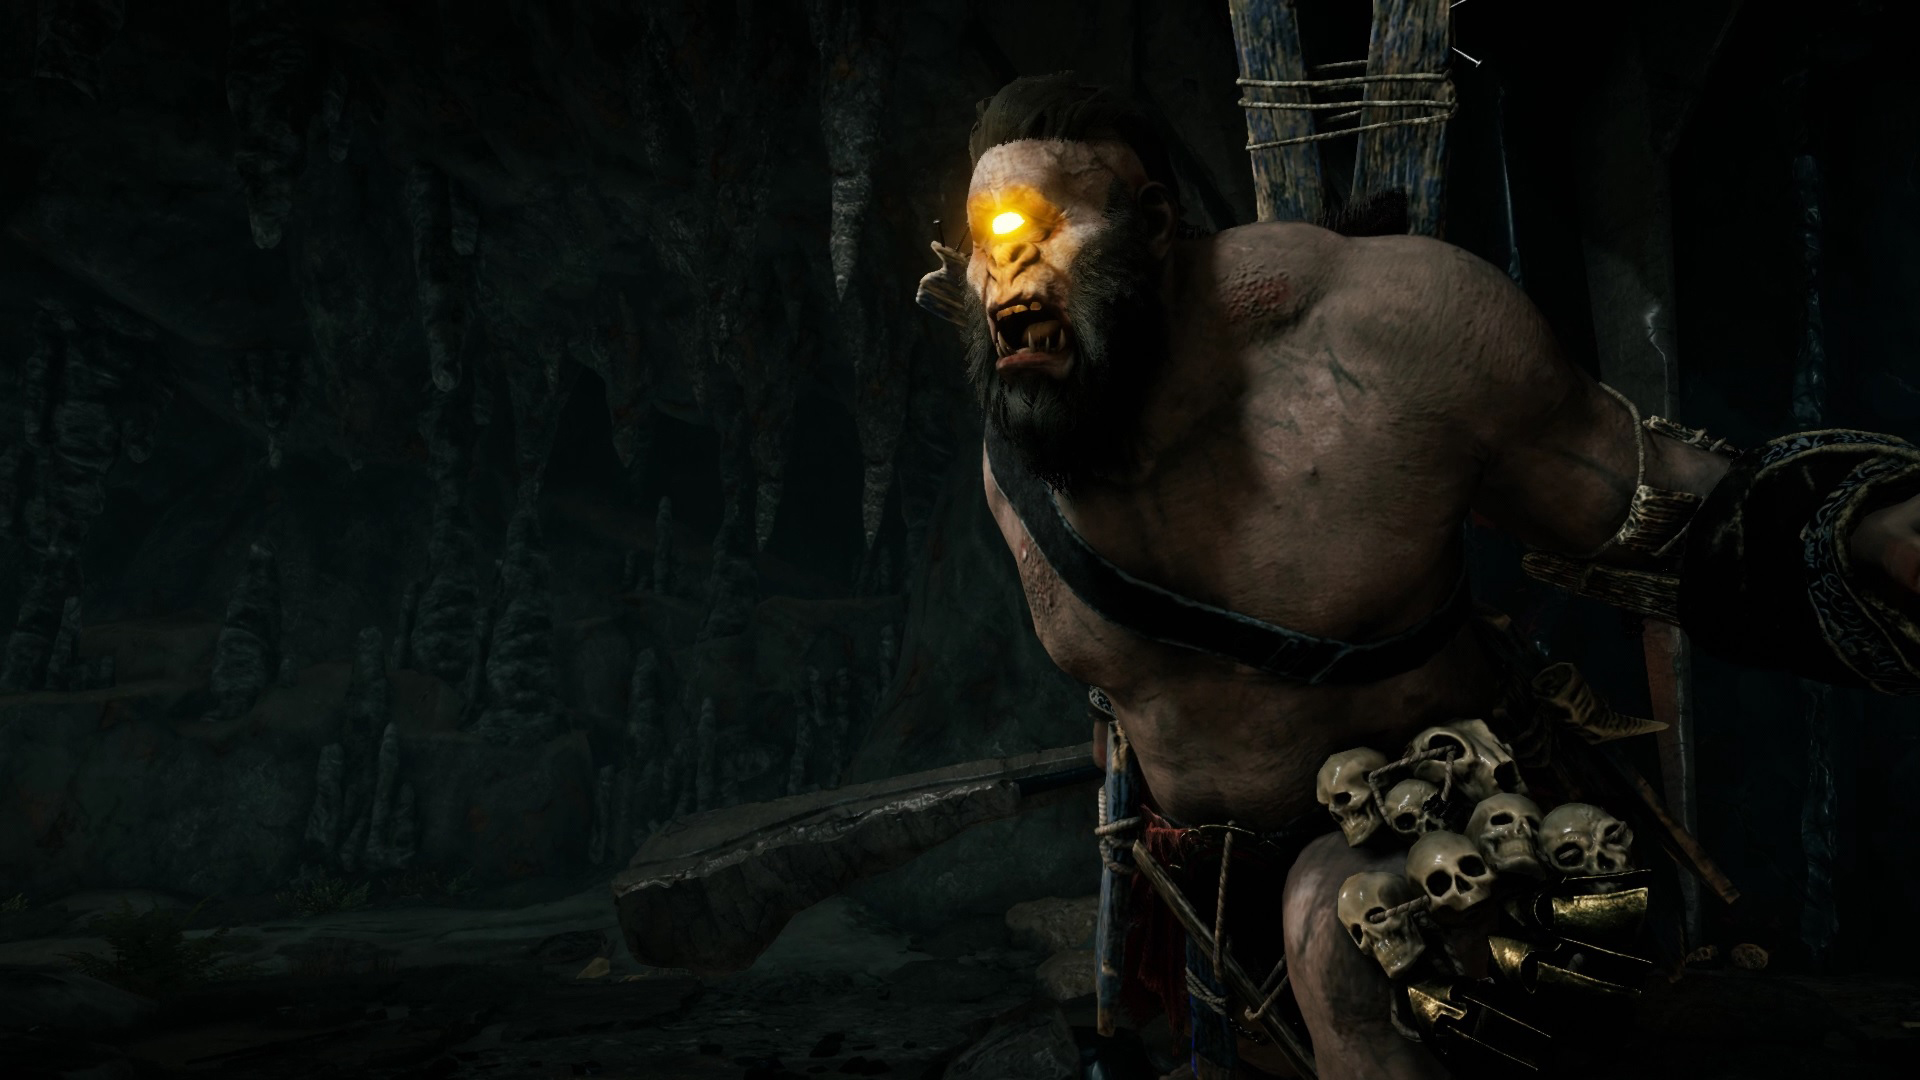 O Ciclope Brontes, à direita da imagem, no interior de uma caverna escura. Seu único olho brilha feito um farol amarelo. O rosto e a postura são ameaçadores. Ele carrega no cinto vários crânios humanos.